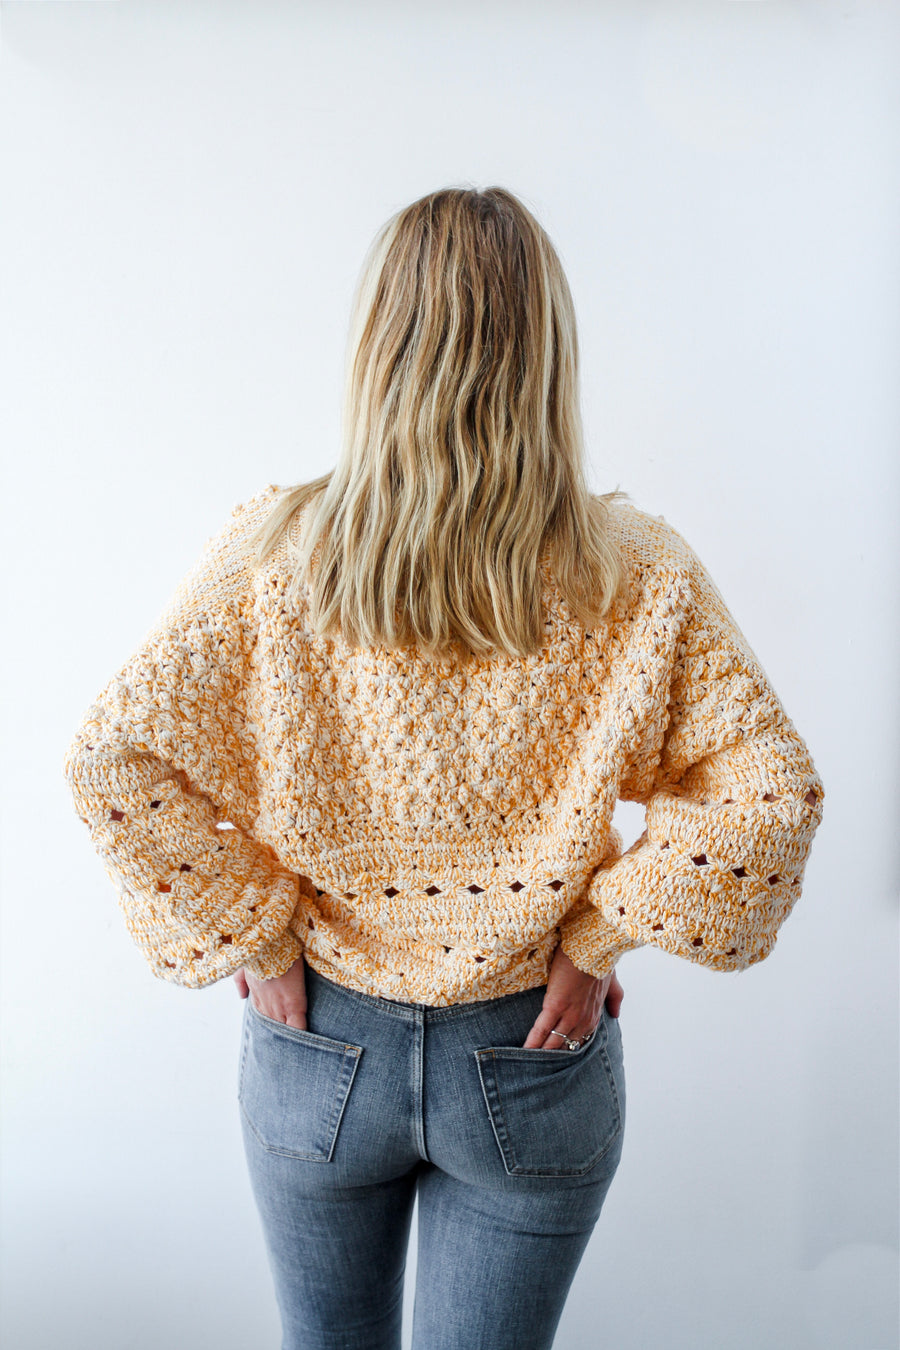 Popcorn Sweater in Marigold - Lex & Lynne